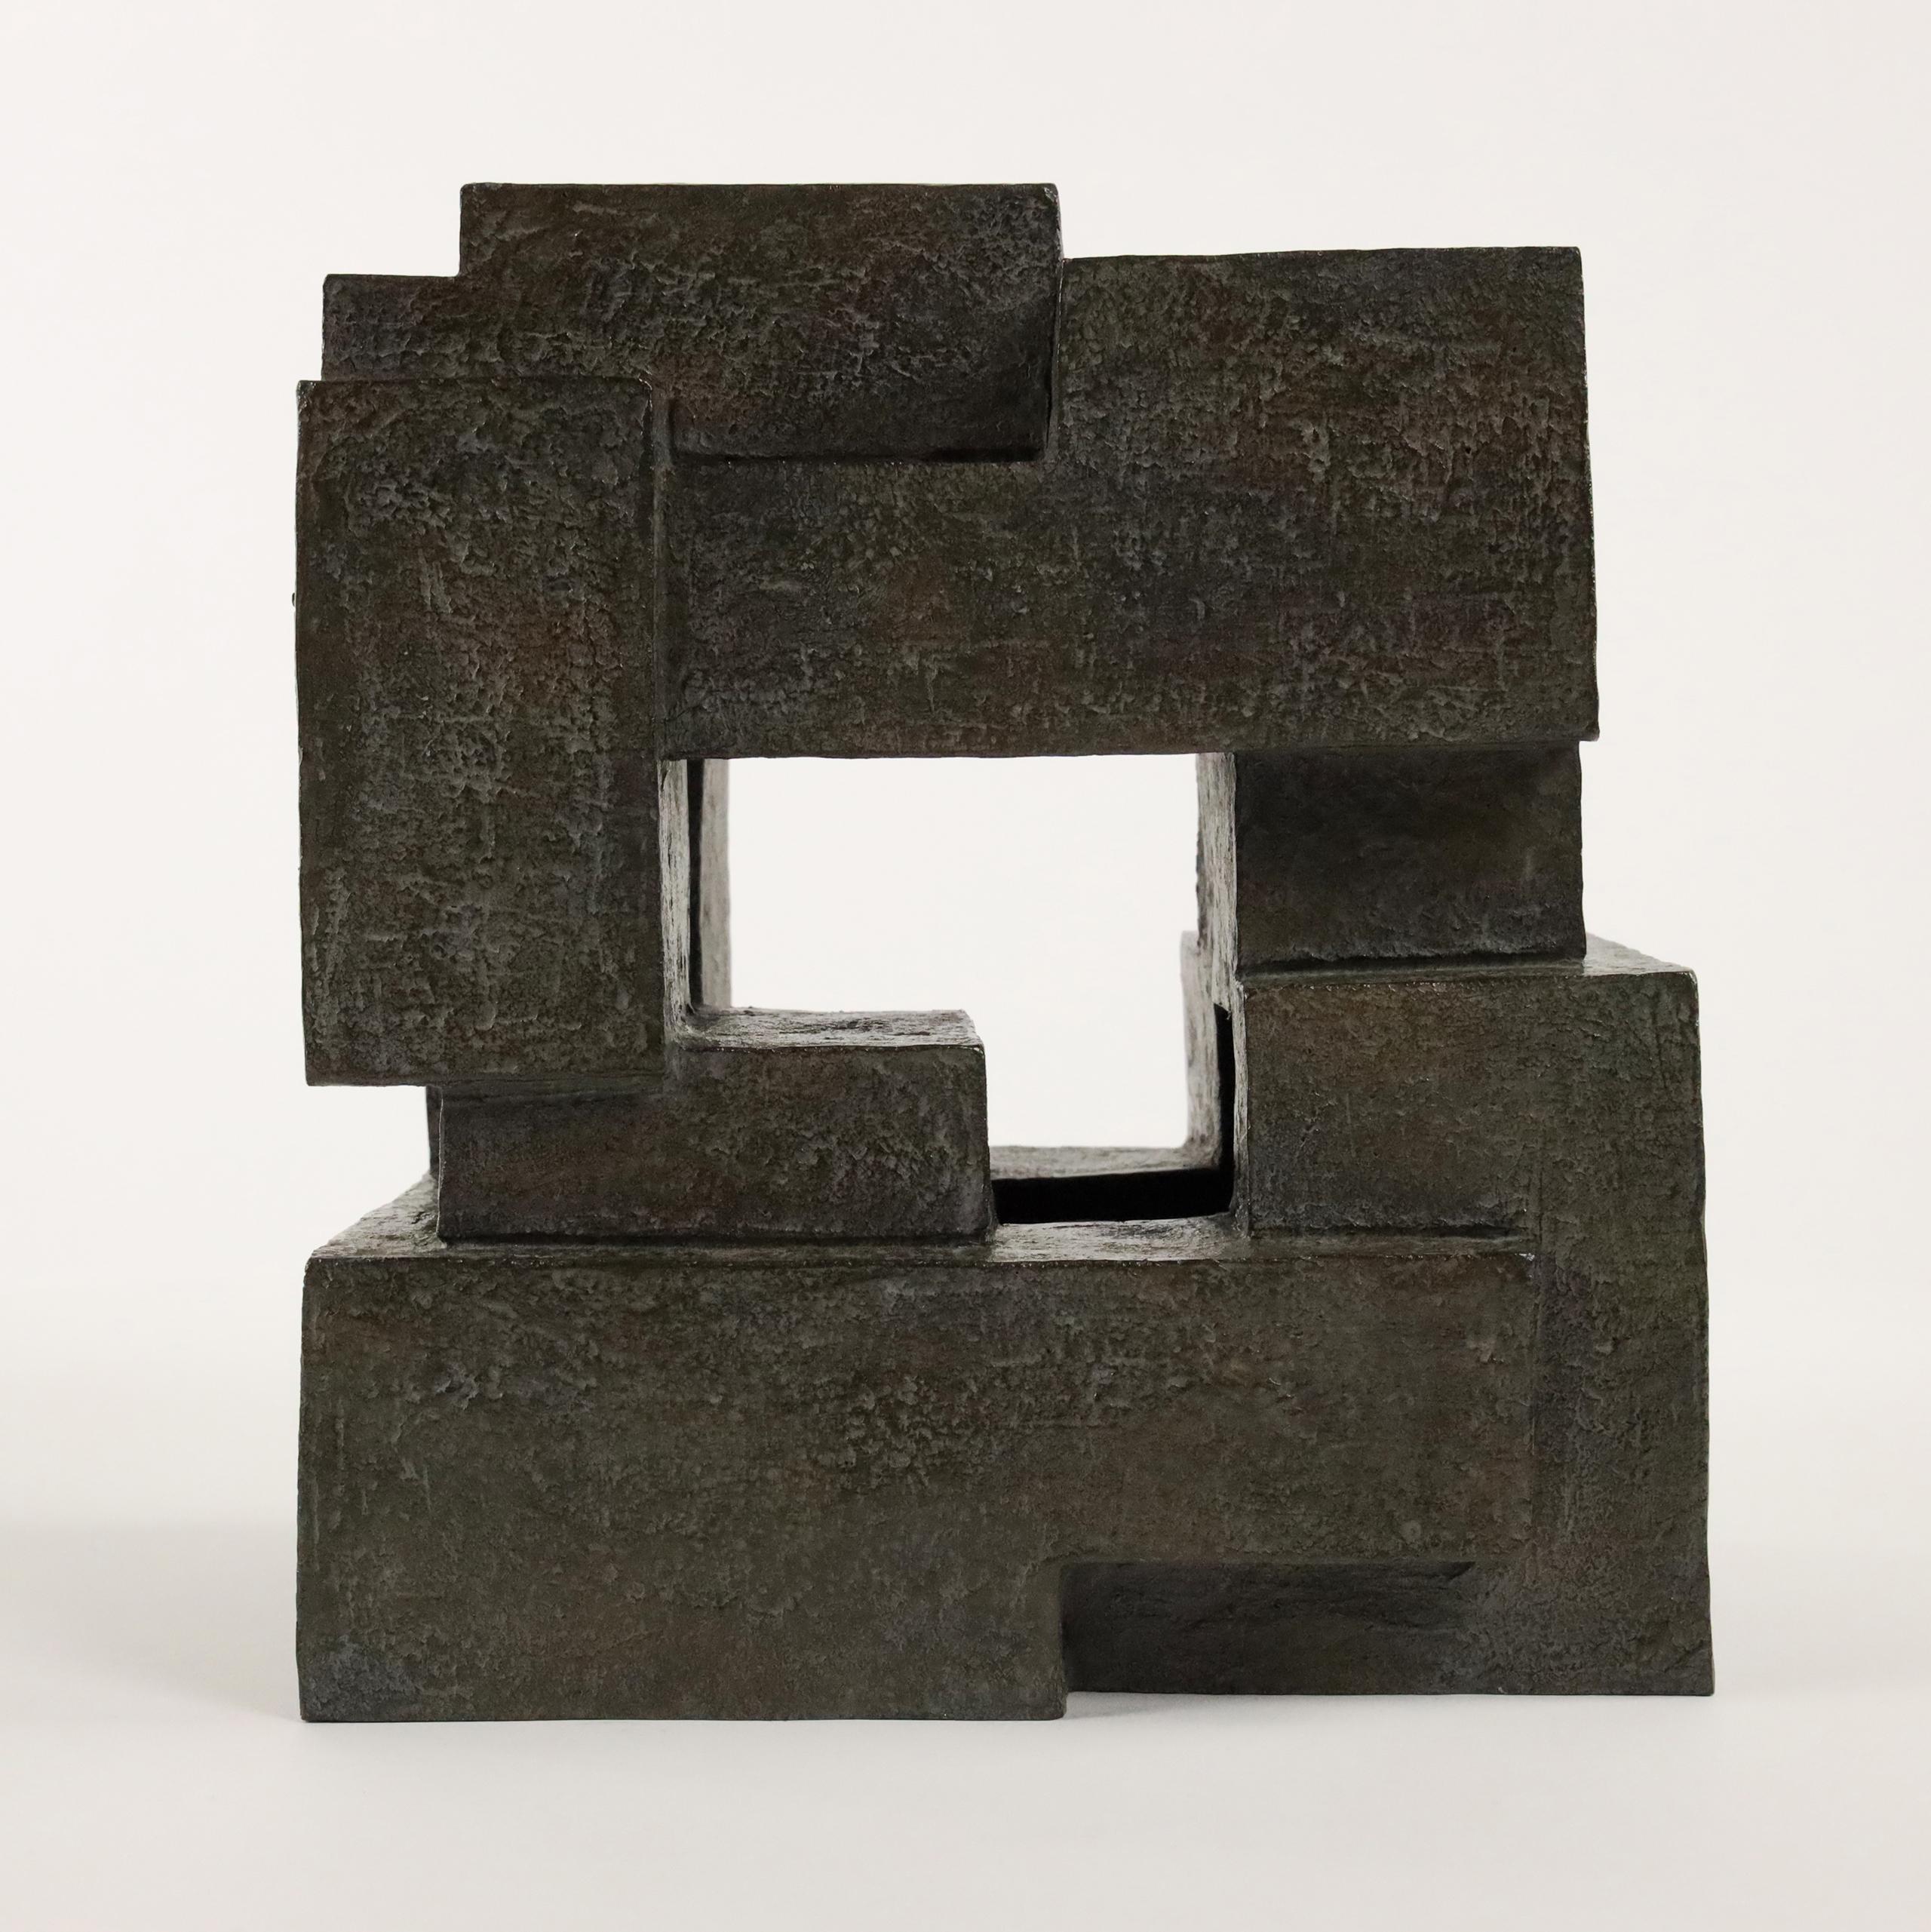 Block VIII est une sculpture en bronze de l'artiste contemporaine française Delphine Brabant, issue de la série "Architecture".
23 cm × 20 cm × 16 cm. Édition limitée à 8 exemplaires et 4 épreuves d'artiste.
Dans cette série, l'artiste conçoit des